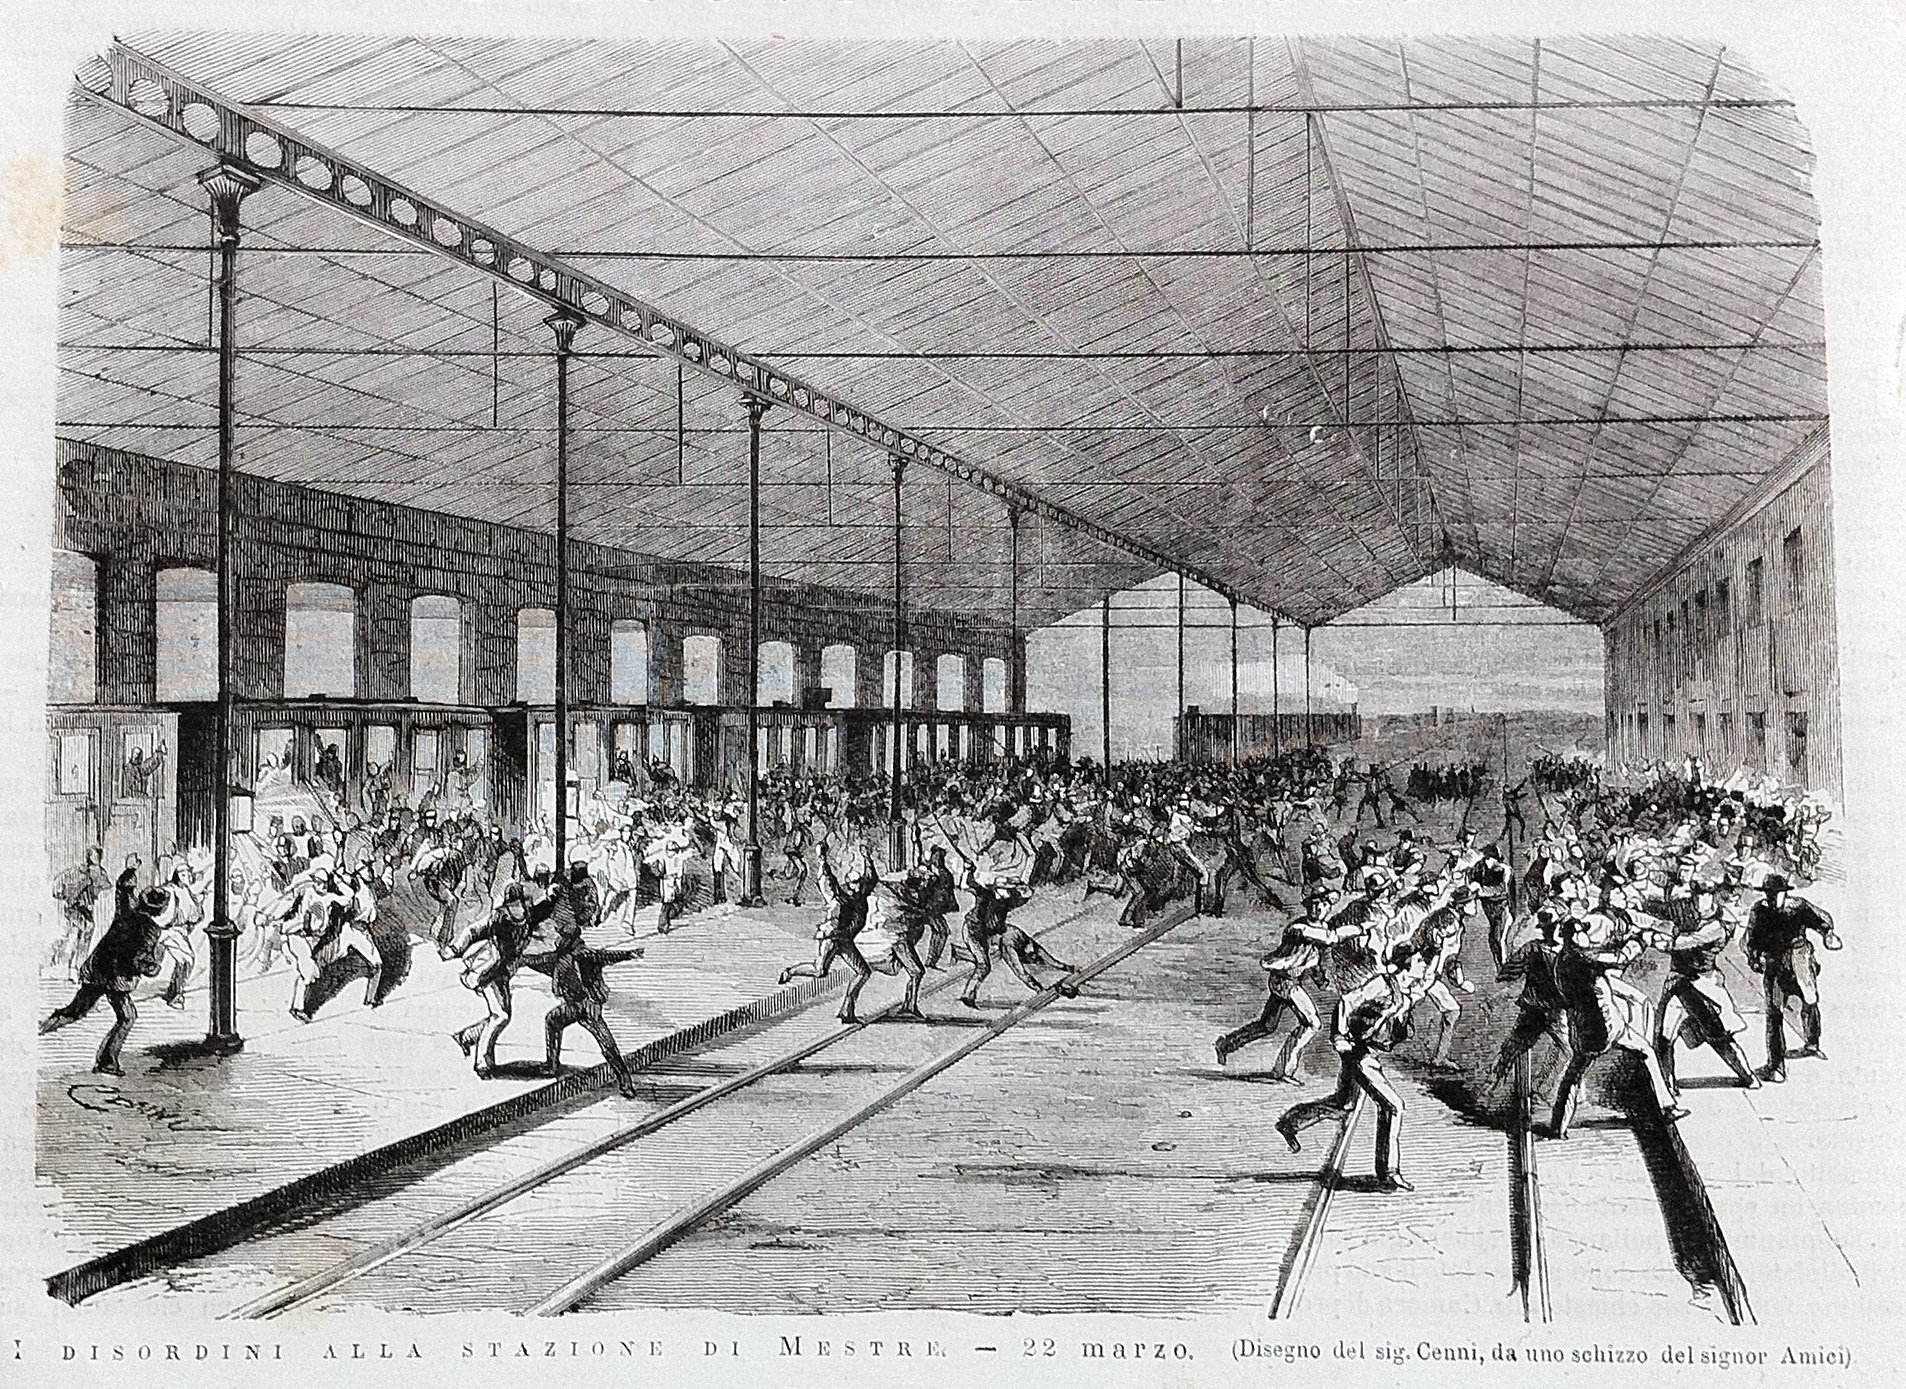 Disordini alla stazione di Mestre, 1876 (disegno di Cenni/Amici, stampa Treves)